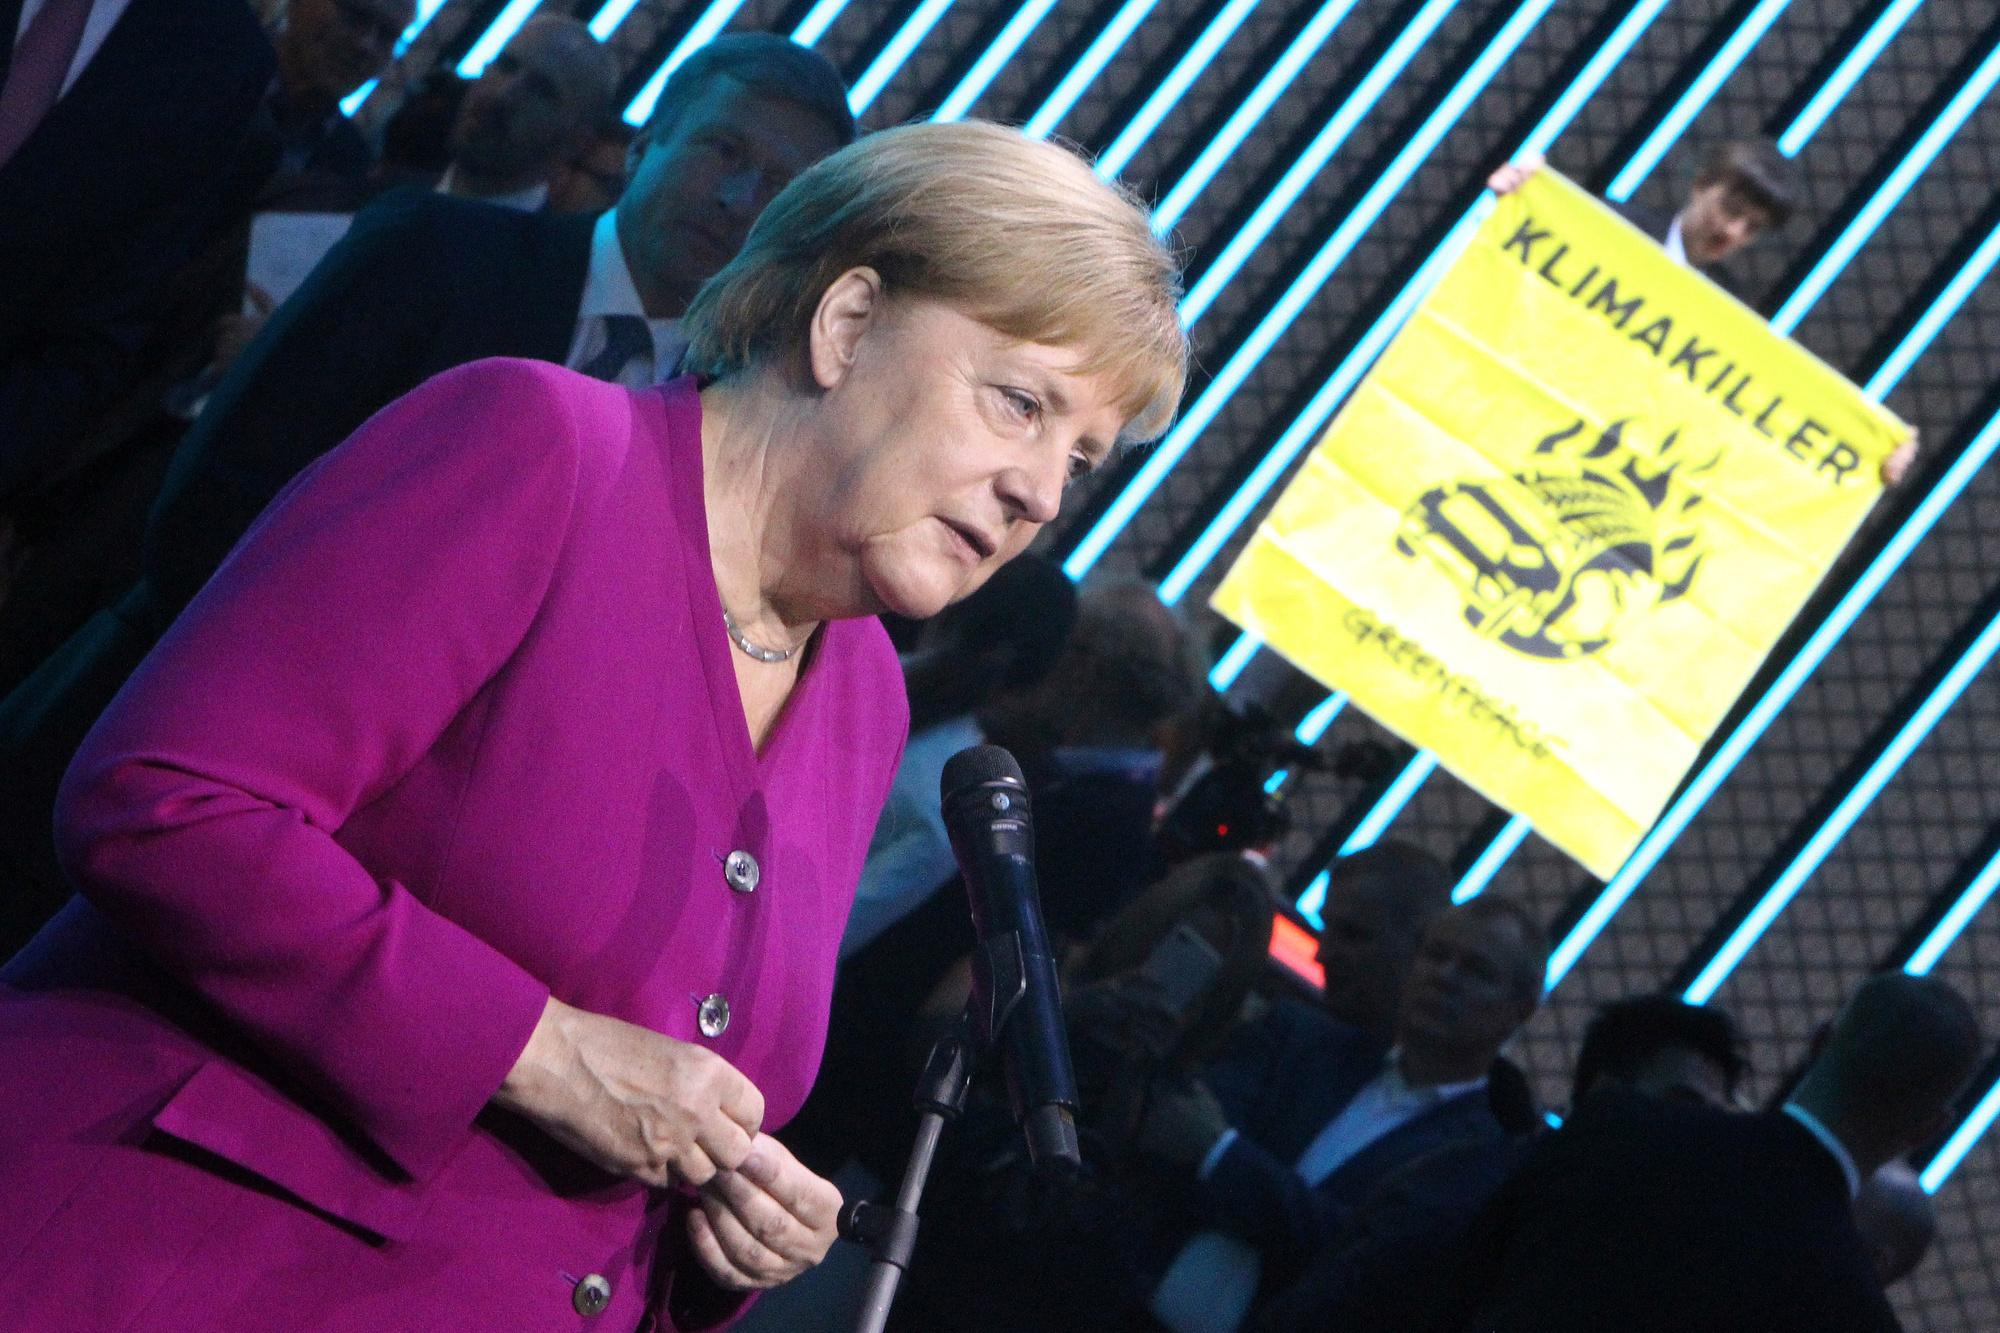 Un activist de Greenpeace monte avec son affiche sur le toit d'une voiture pendant la visite d'Angela Merkel